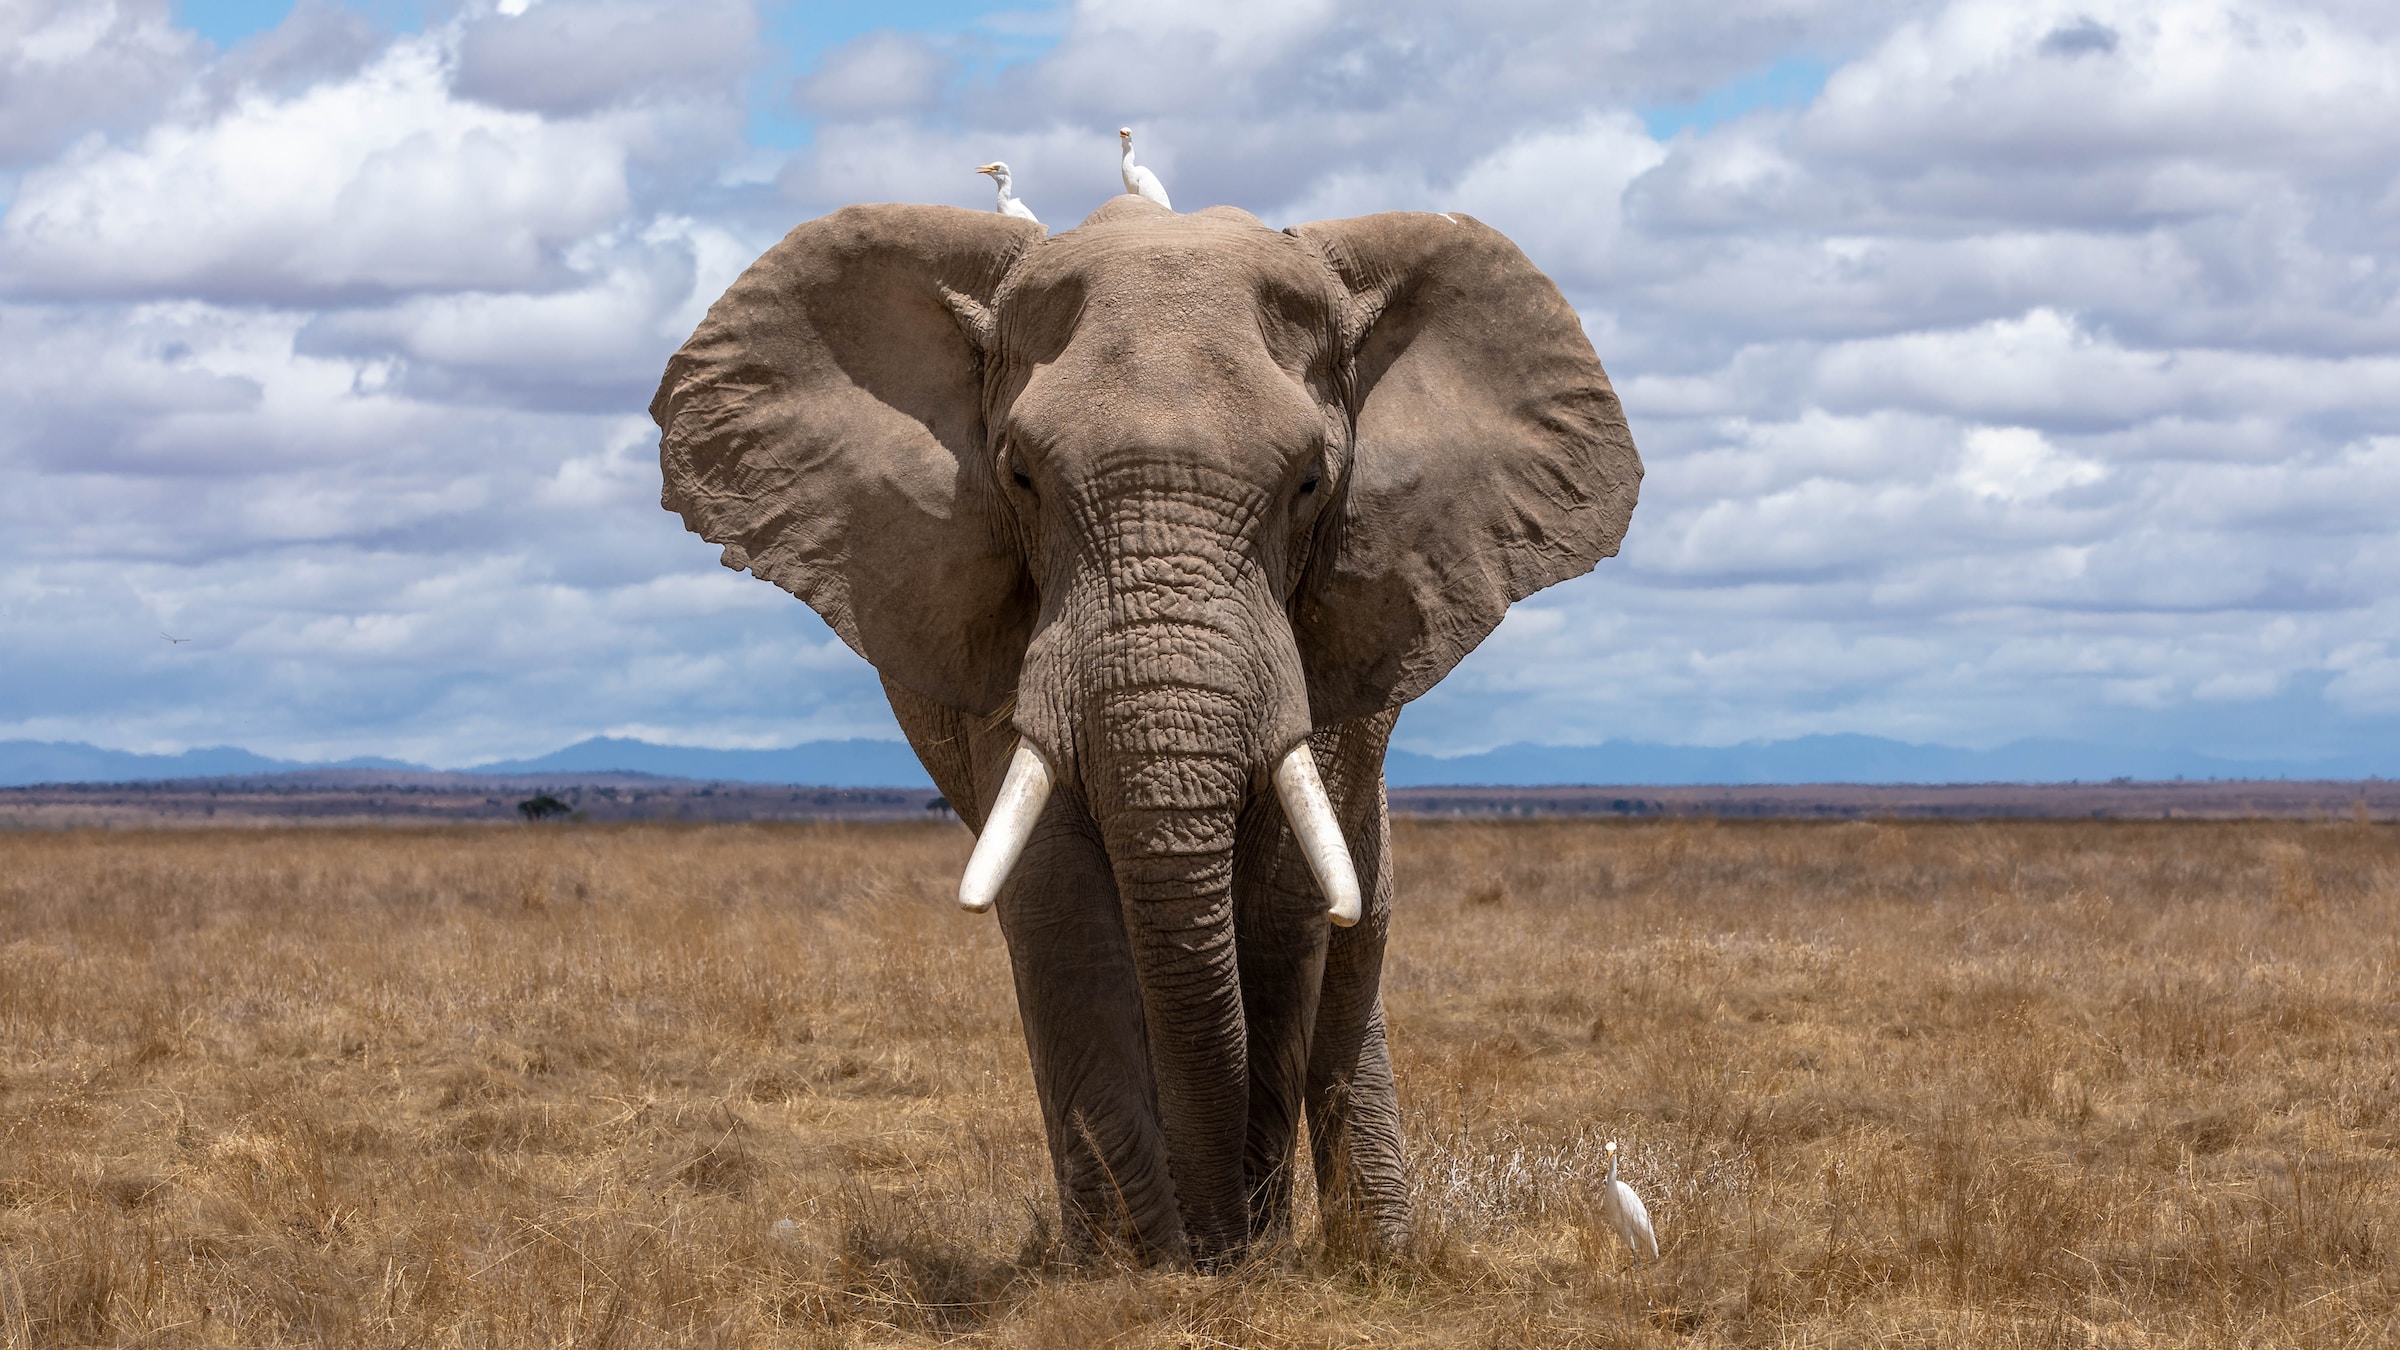 Les éléphants seraient protégés du cancer grâce à leurs énormes testicules